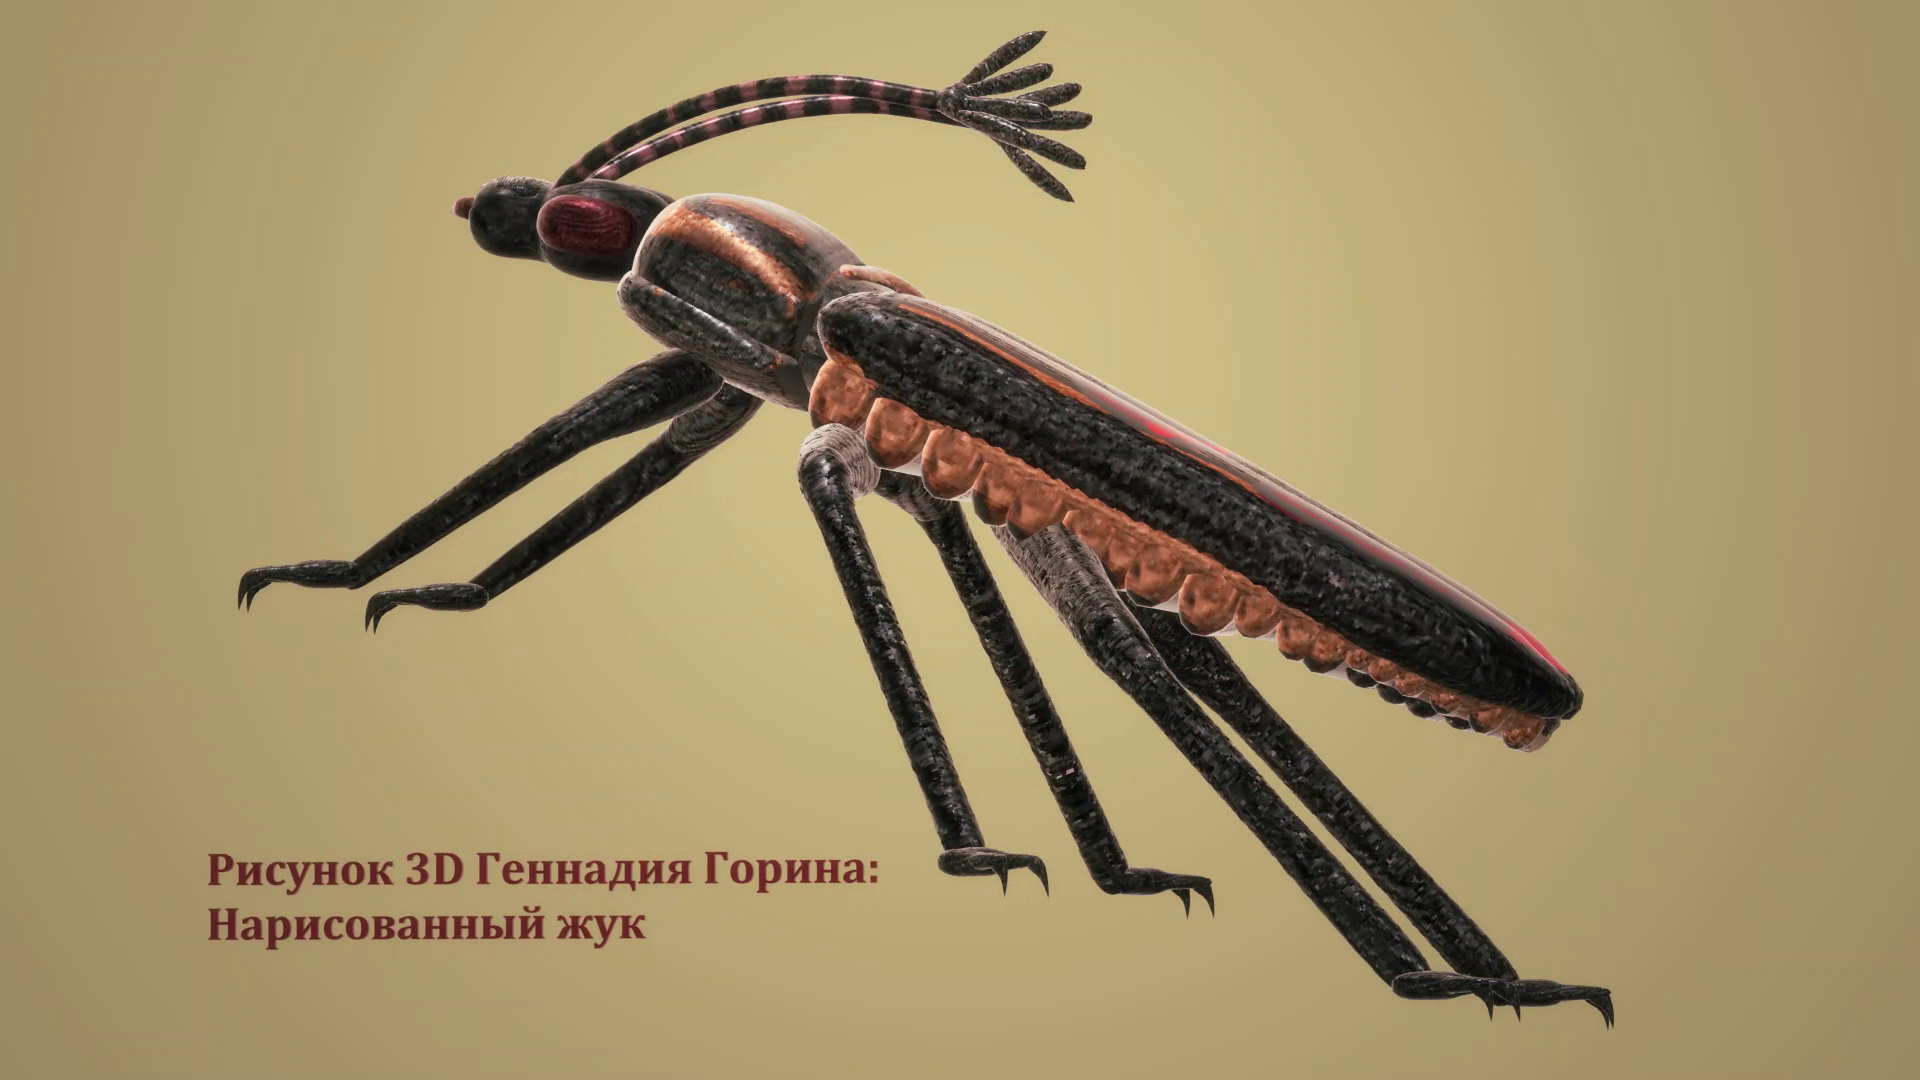 Рисунок 3D - Нарисованный жук. Видео без звука